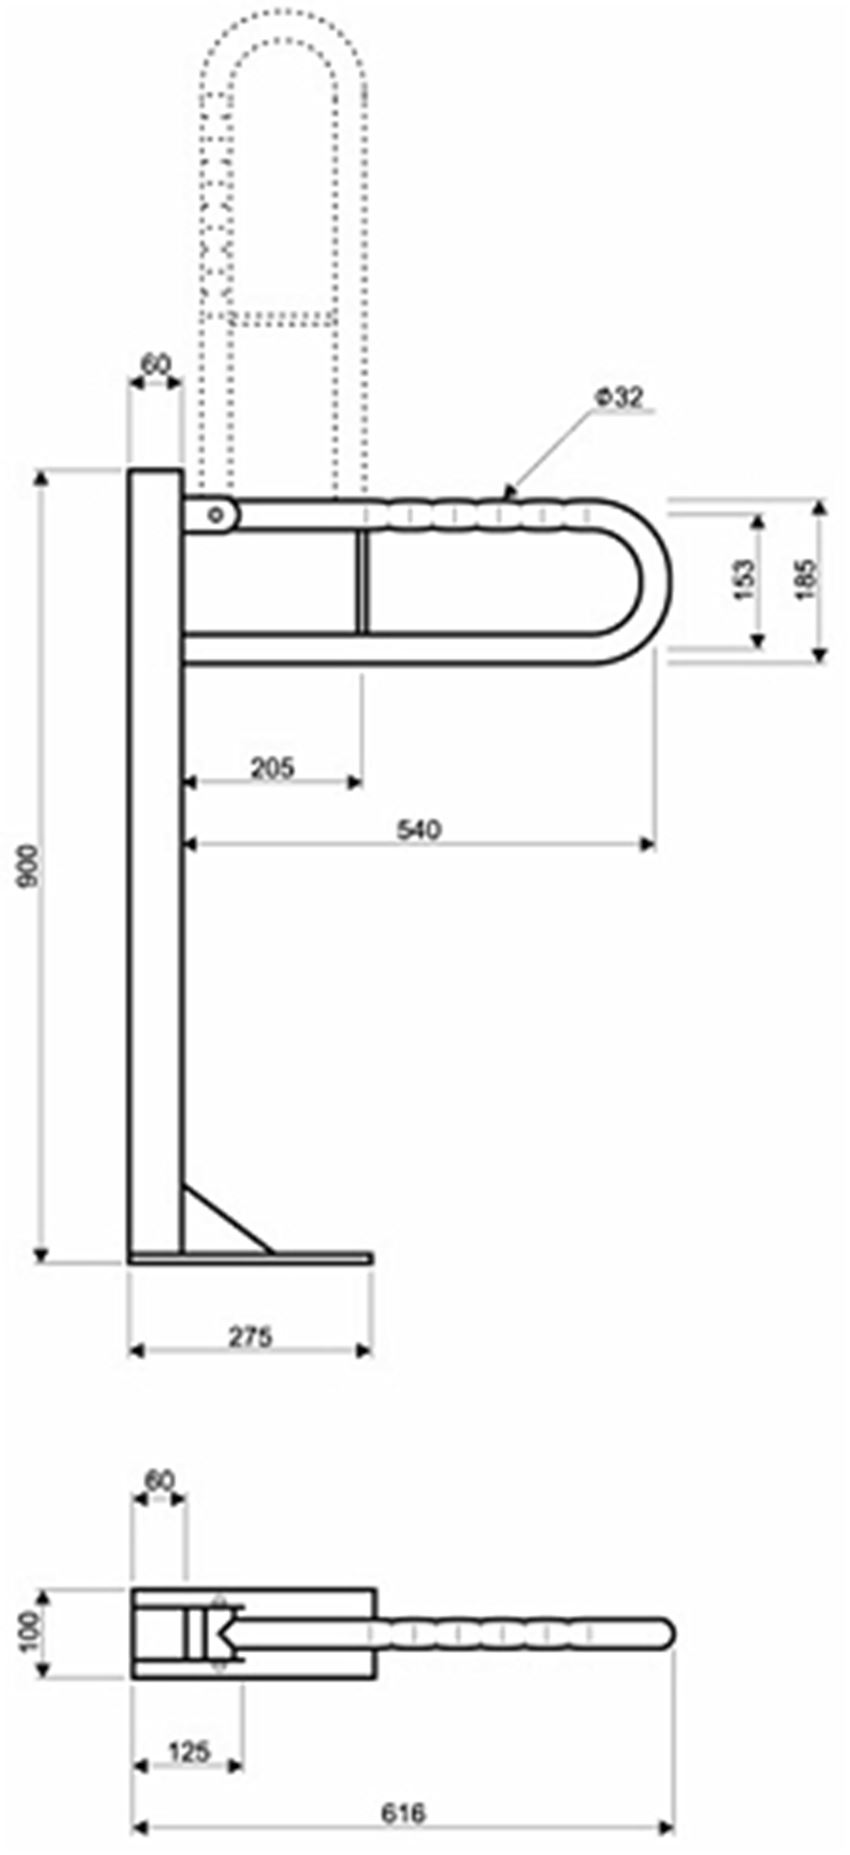 Poręcz WC uchylna łukowa stojąca 60 cm powierzchnia falista Koło Lehnen Funktion rysunek techniczny